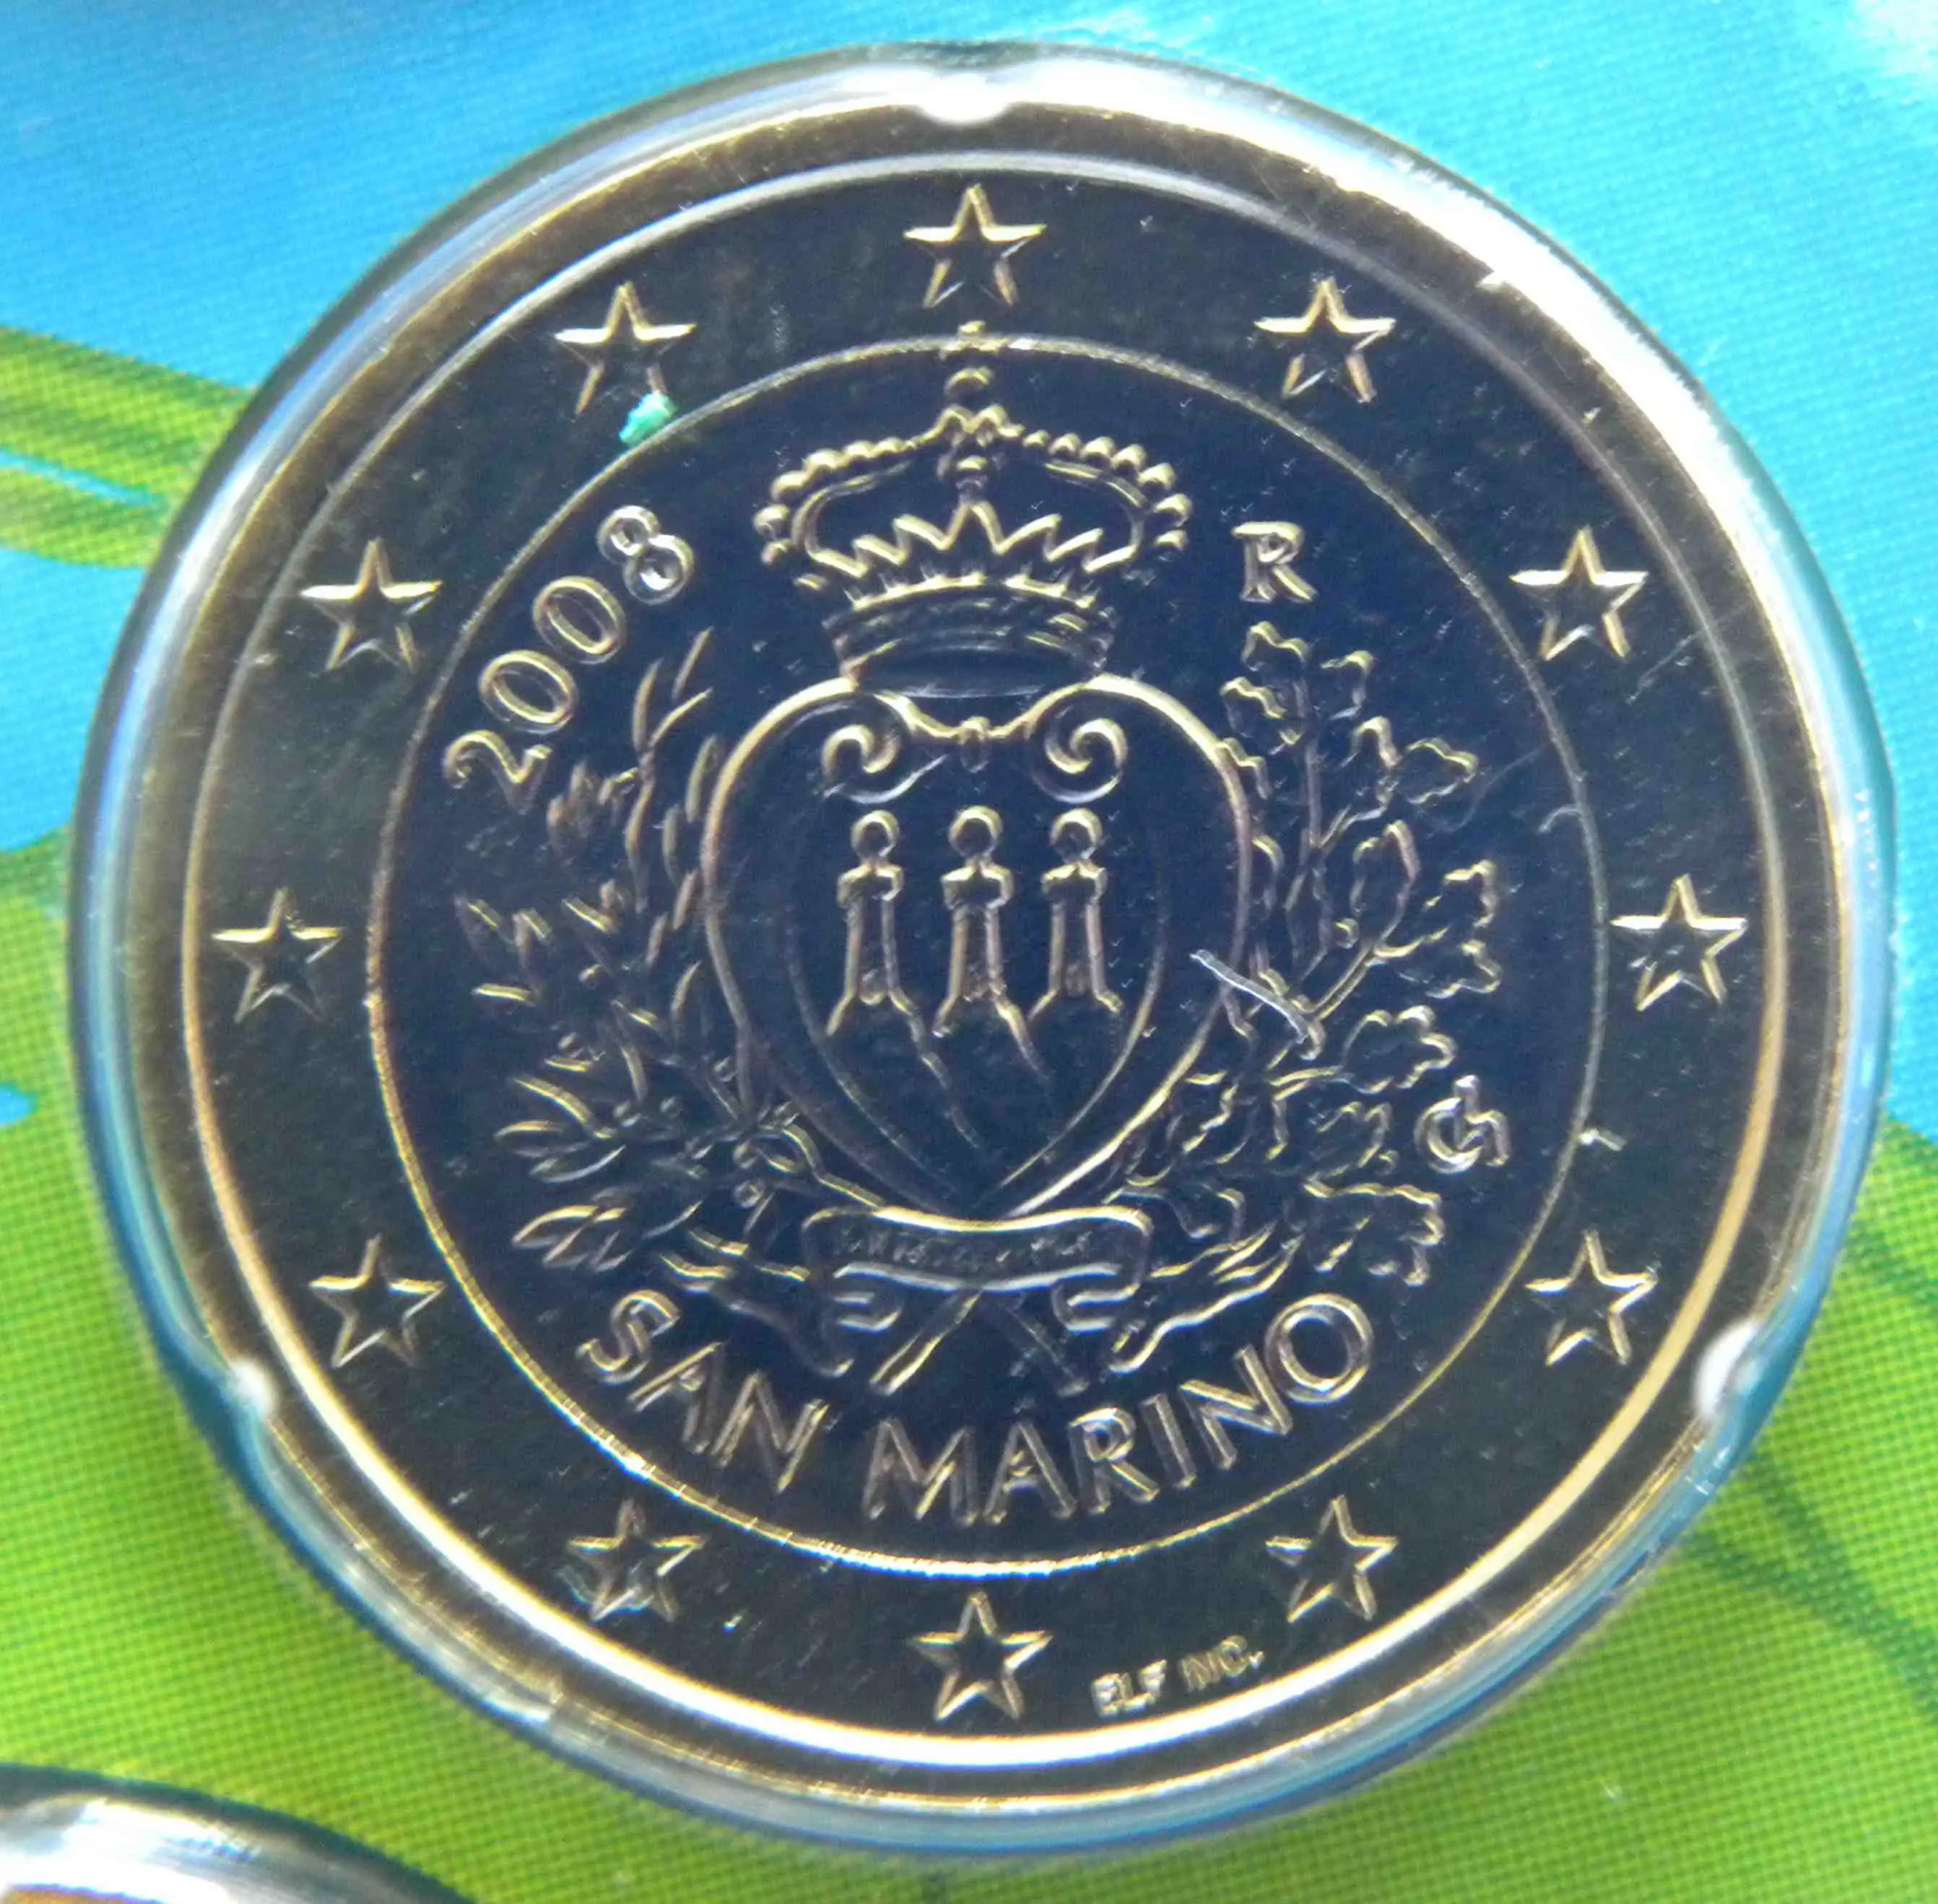 San Marino 1 Euro Münze 2008 - euro-muenzen.tv - Der Online Euromünzen